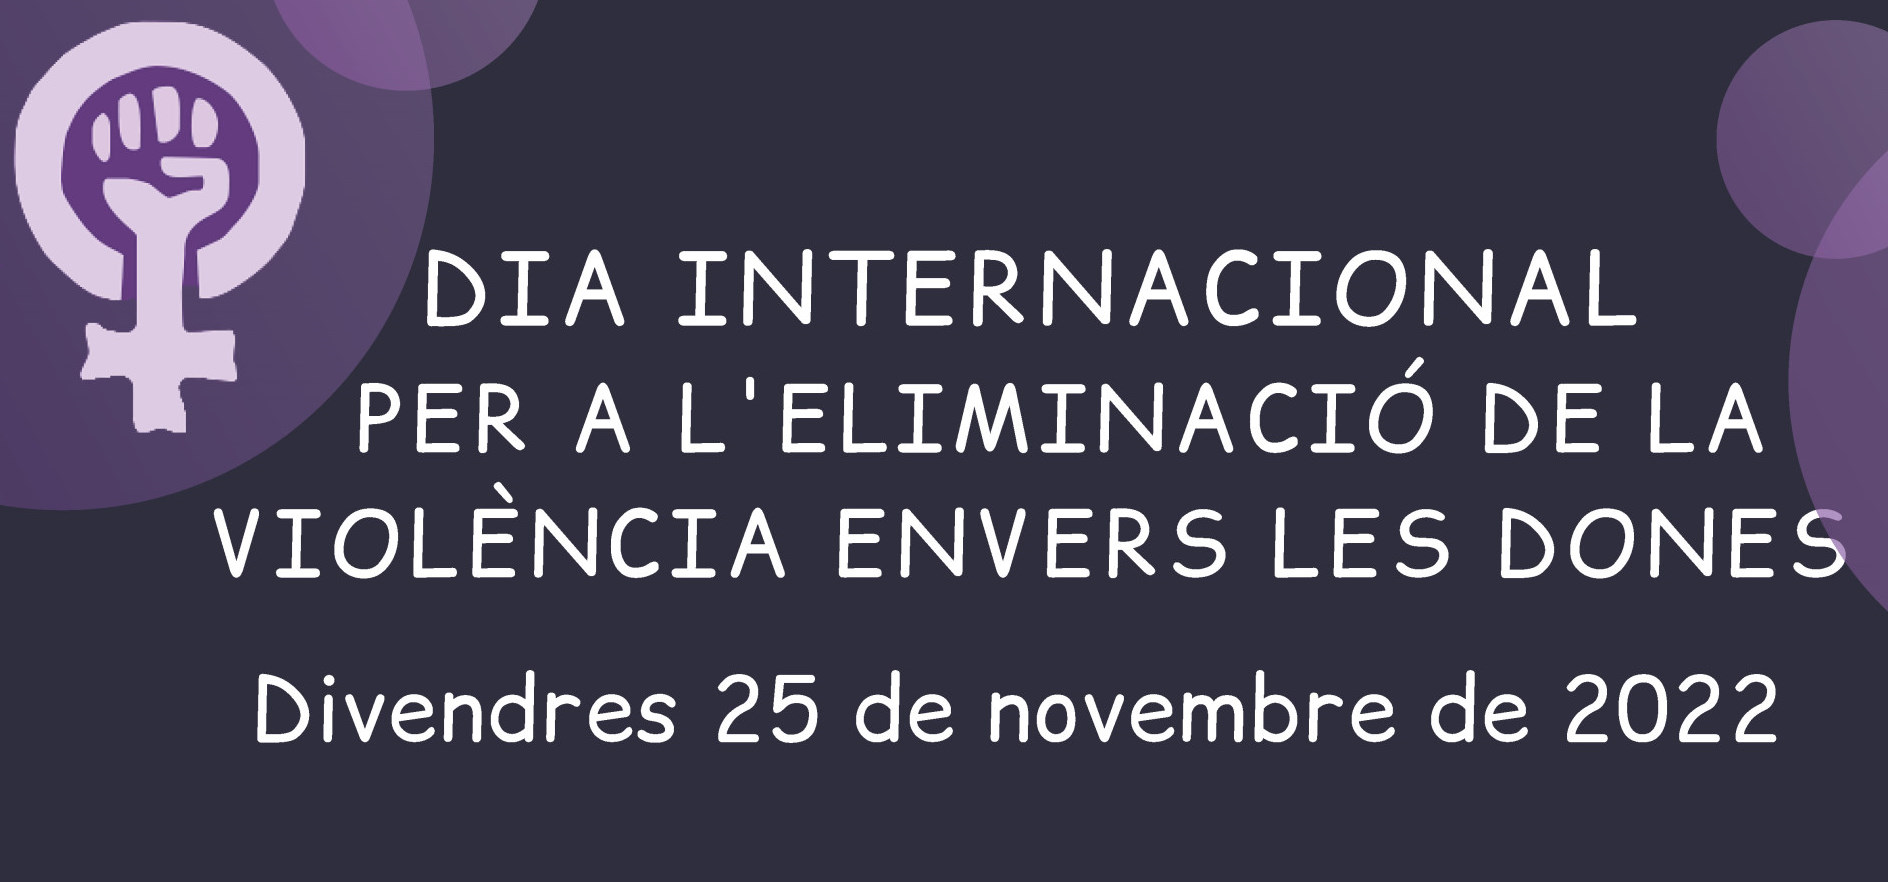 Divendres 25 de novembre, commemoració del Dia Internacional per a l'Eliminació de la Violència envers les Dones